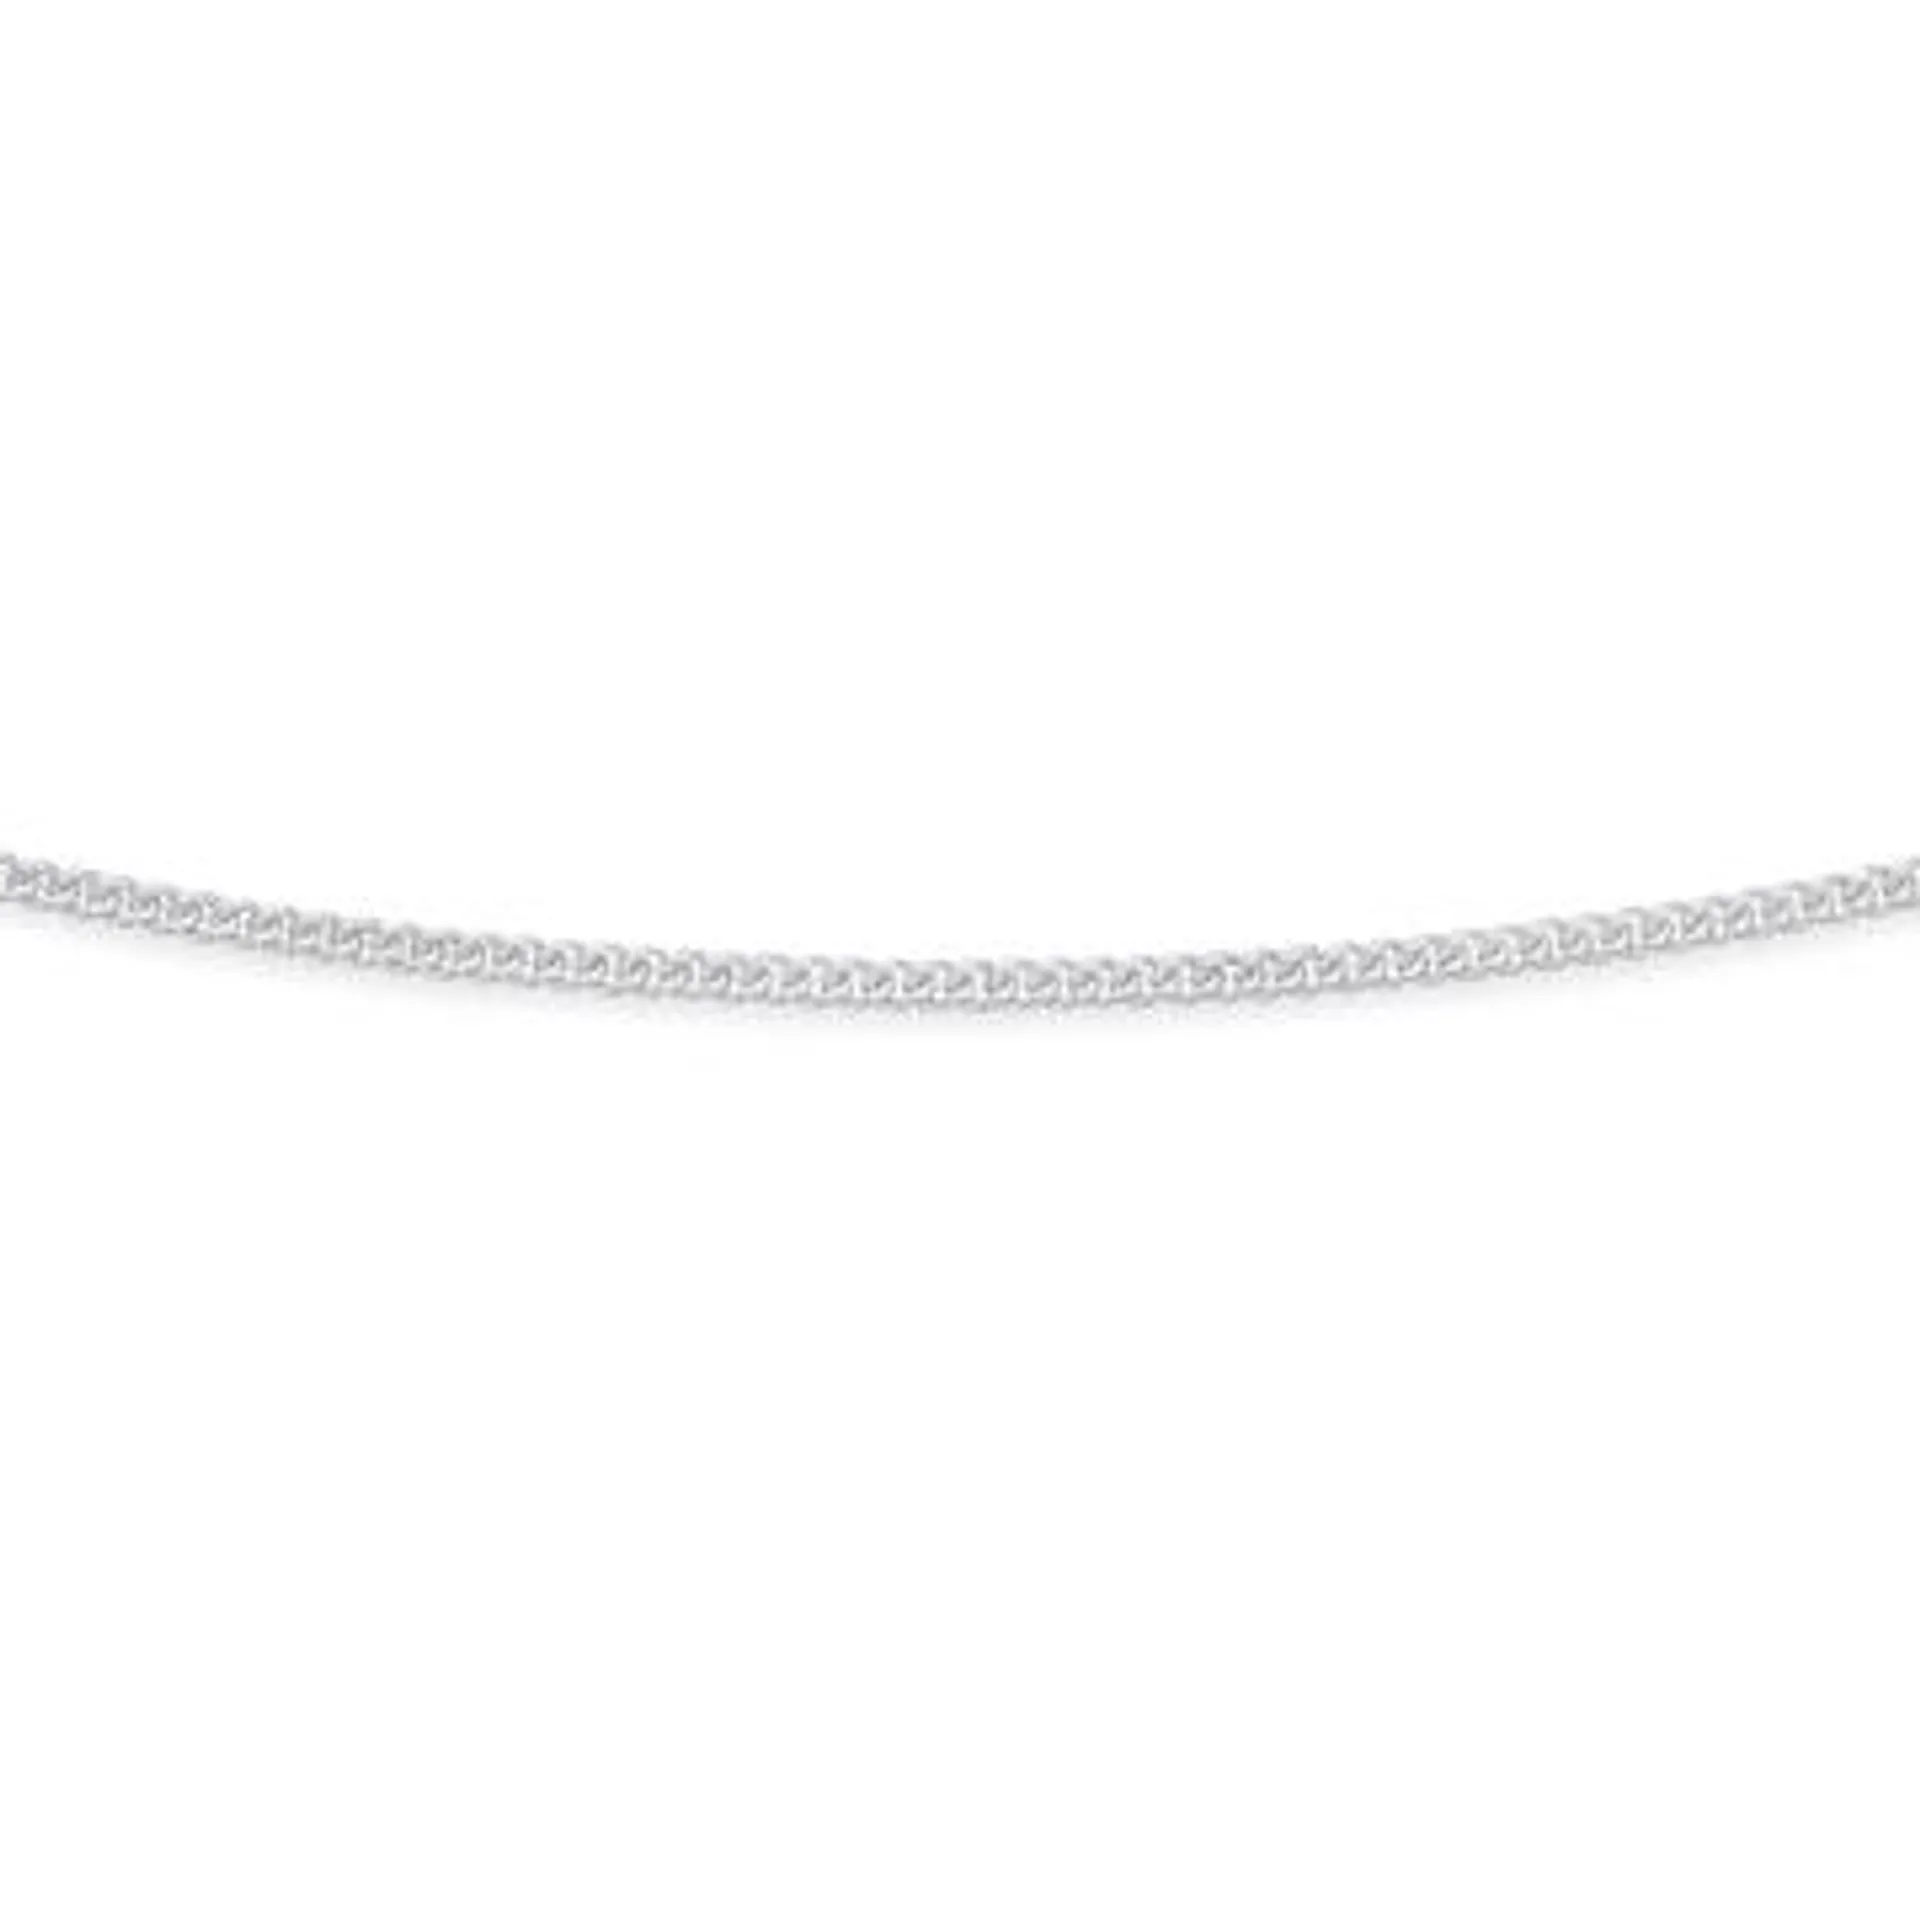 Sterling Silver 45cm Diamond Cut Curb Chain